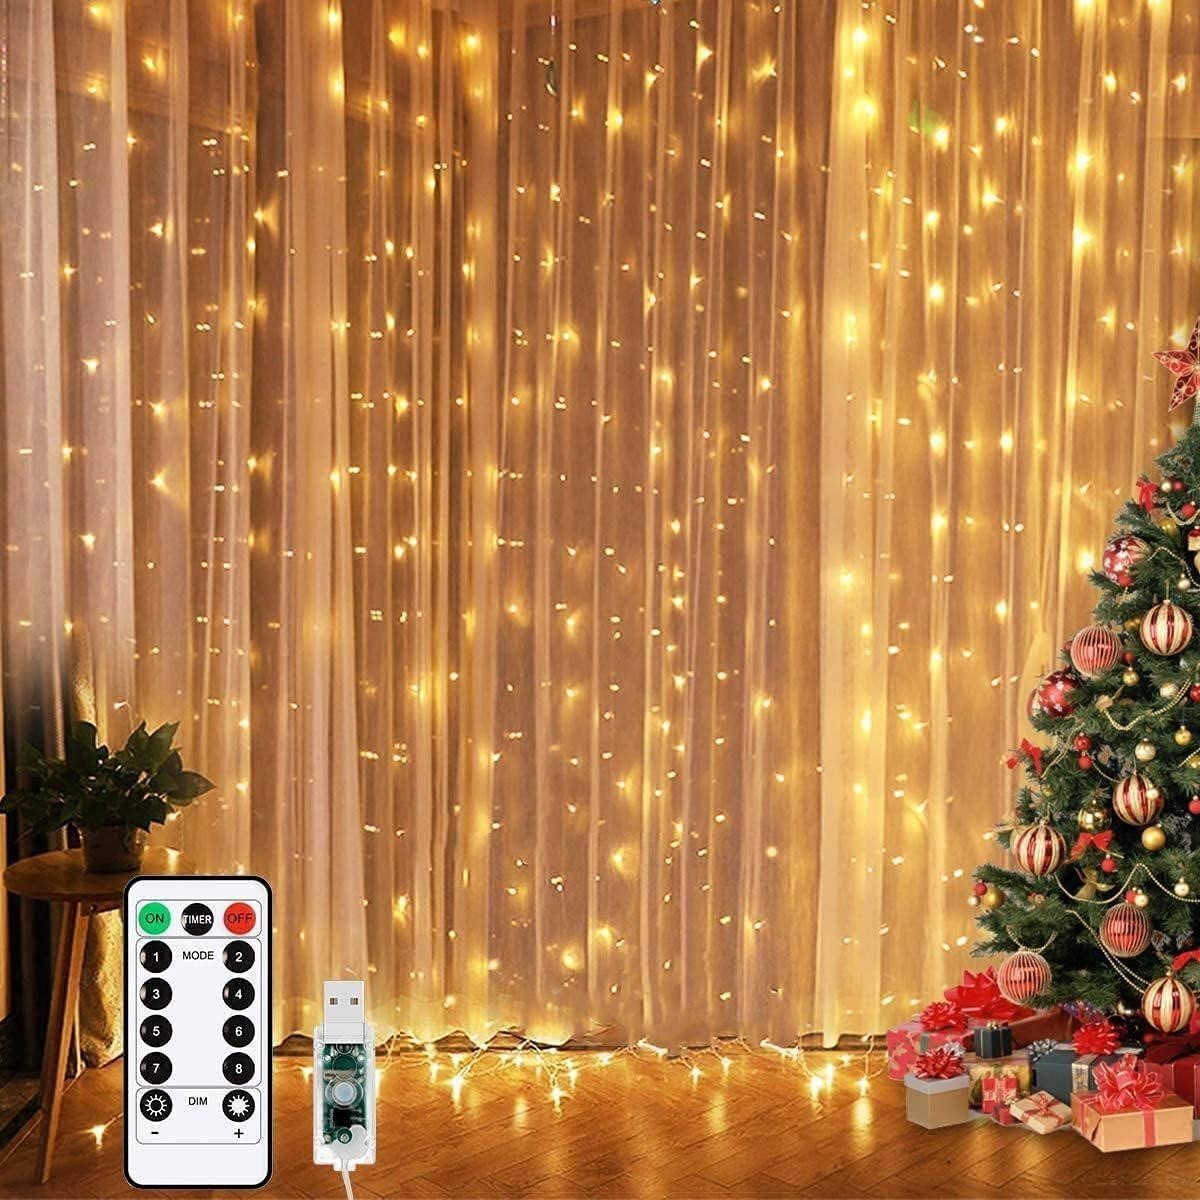 NEW $30 9.8FT LED Curtain Fairy Lights